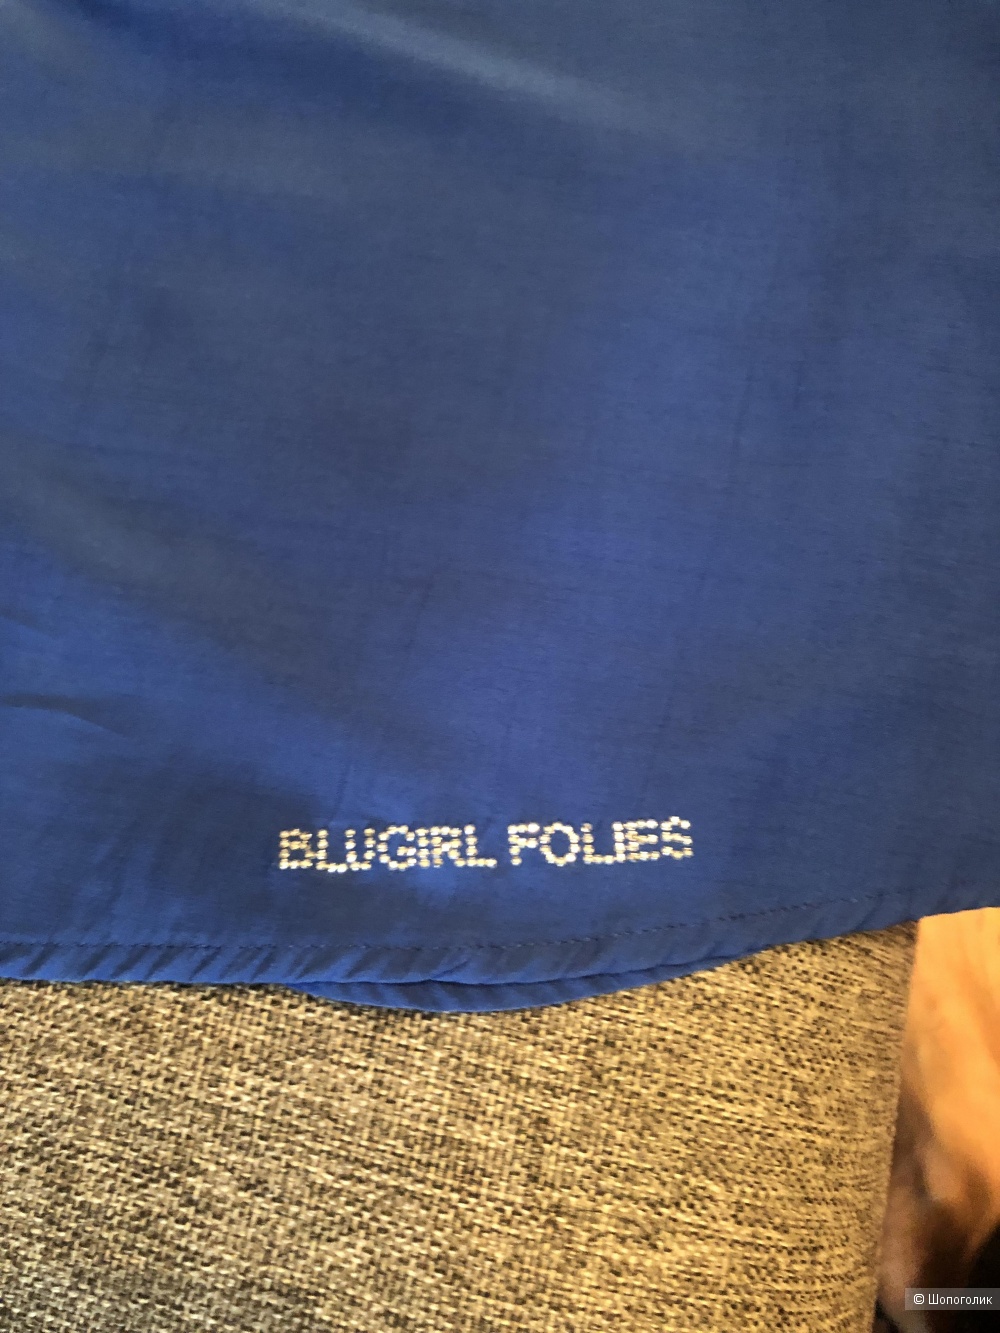 Платье Blugirl Folies, размер 42 it (44 рос.)